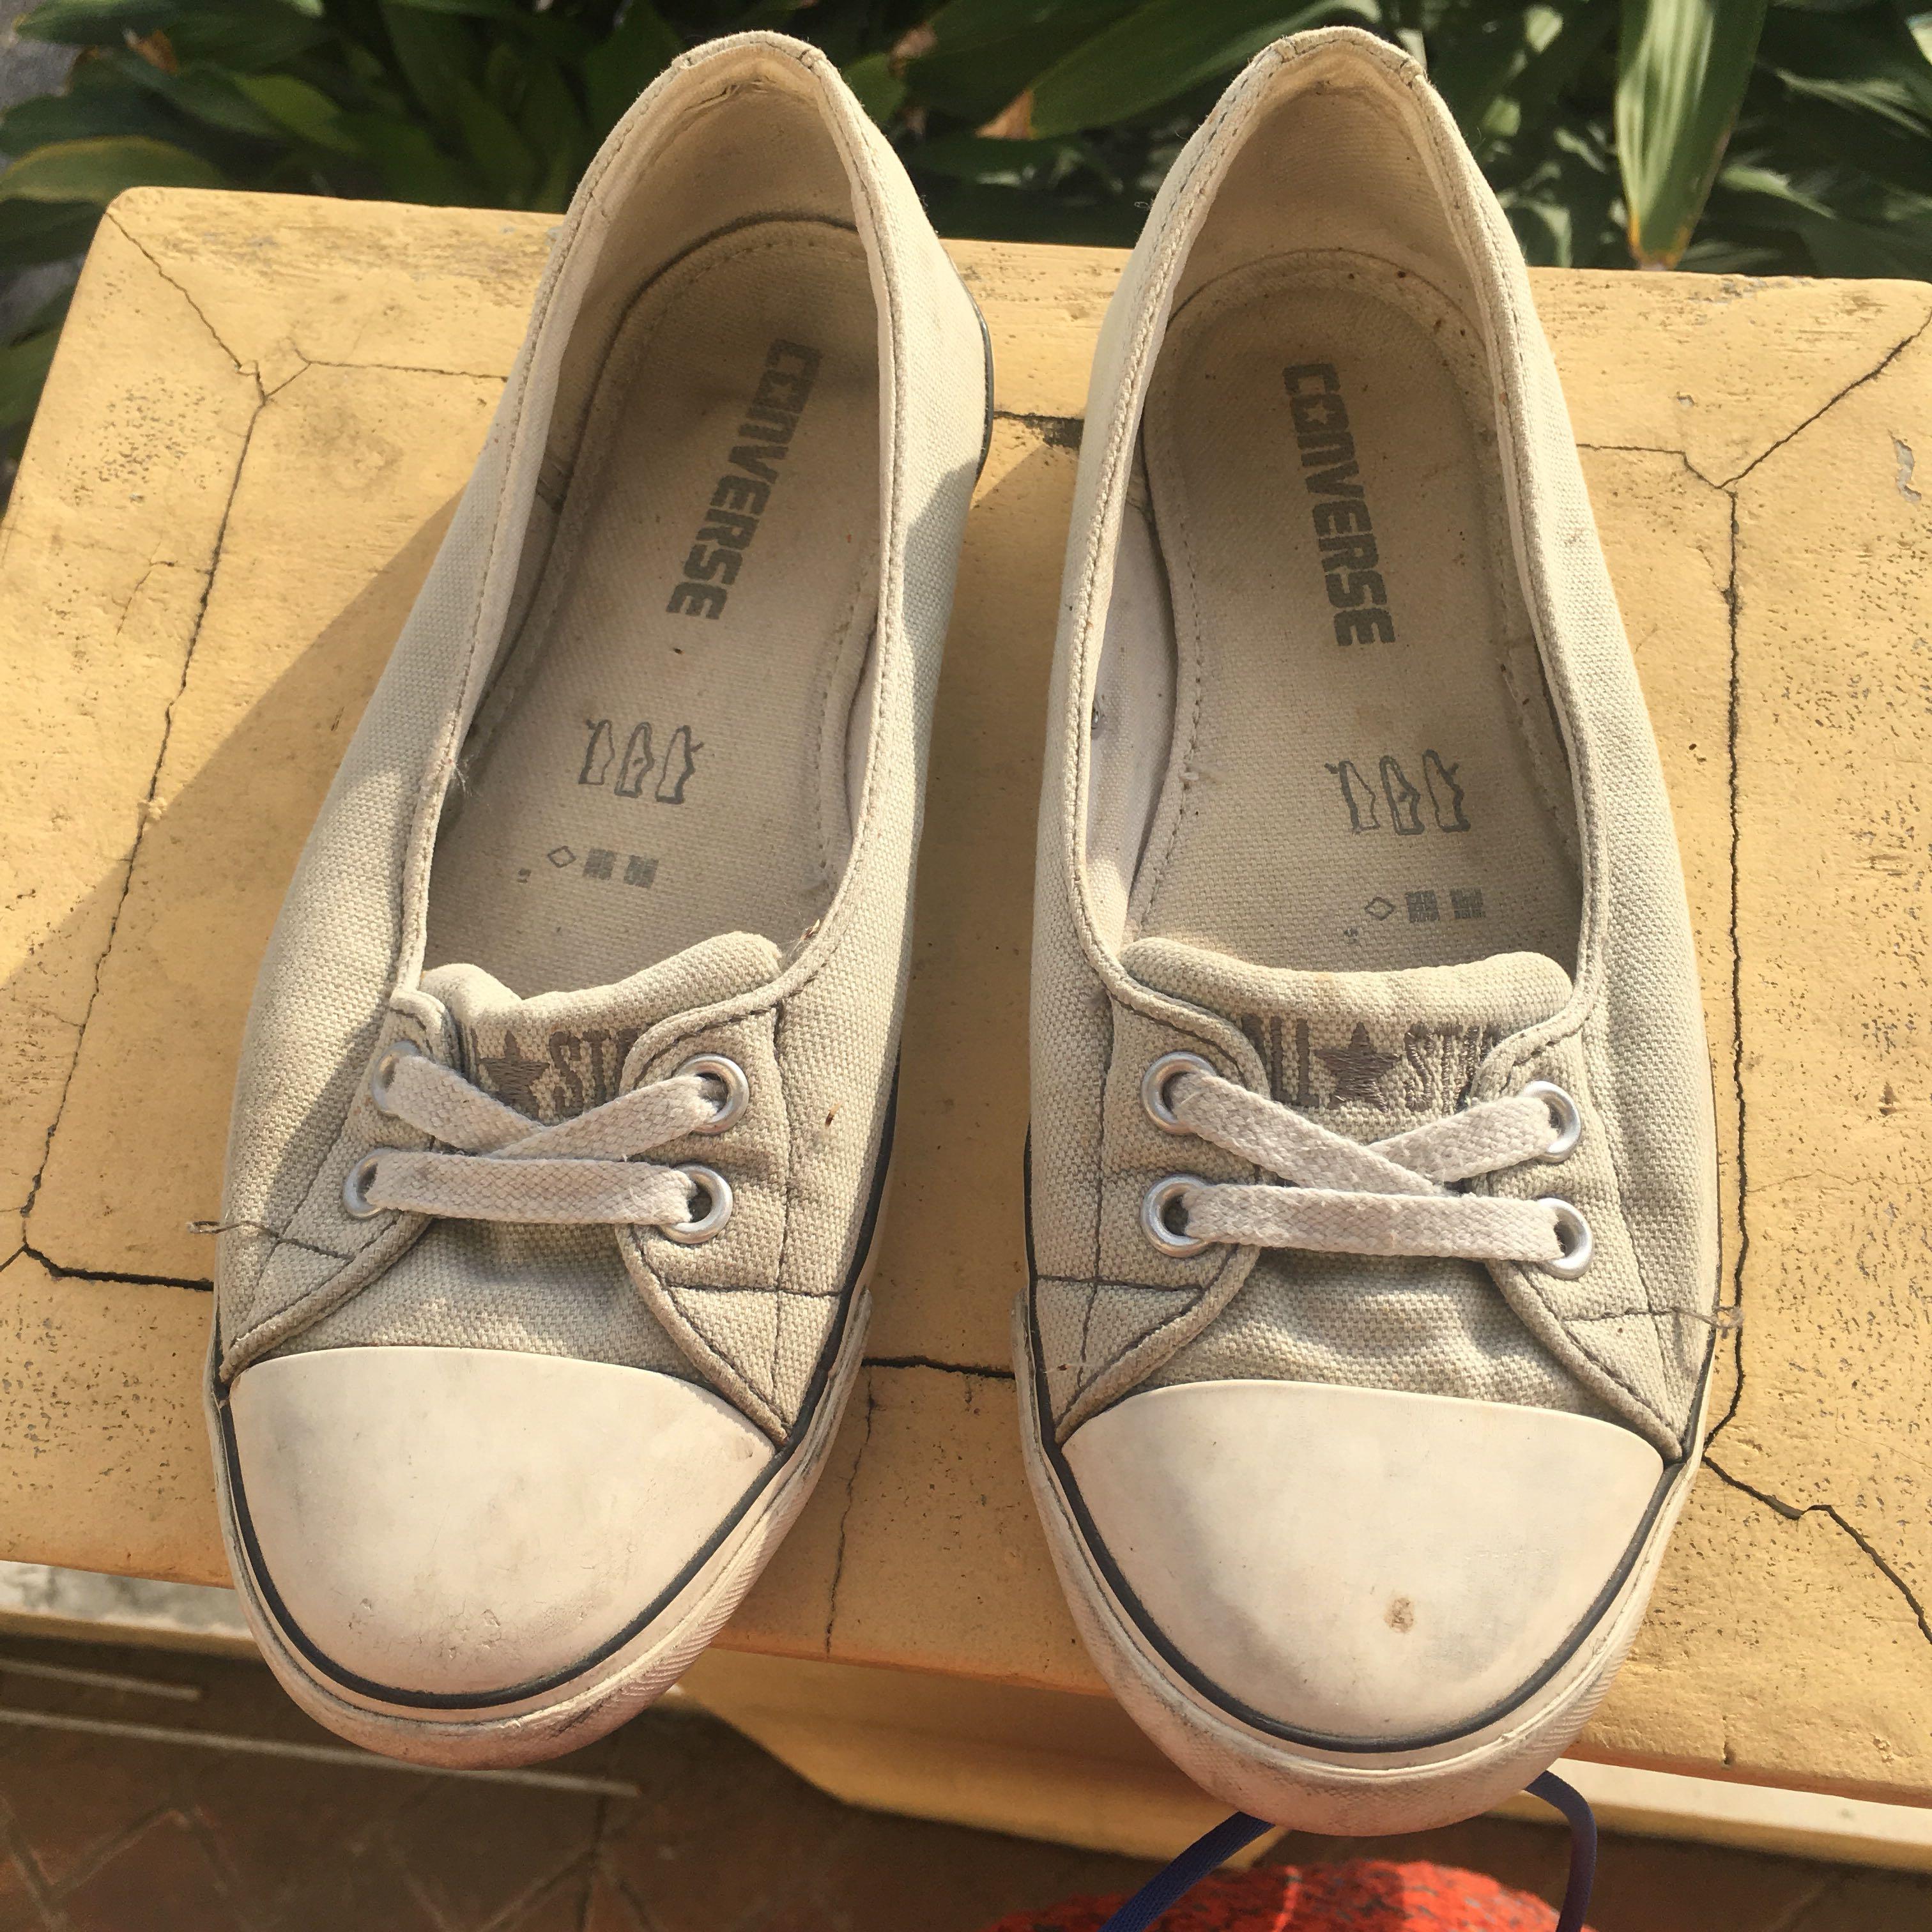 SALE! Original converse walking shoes 